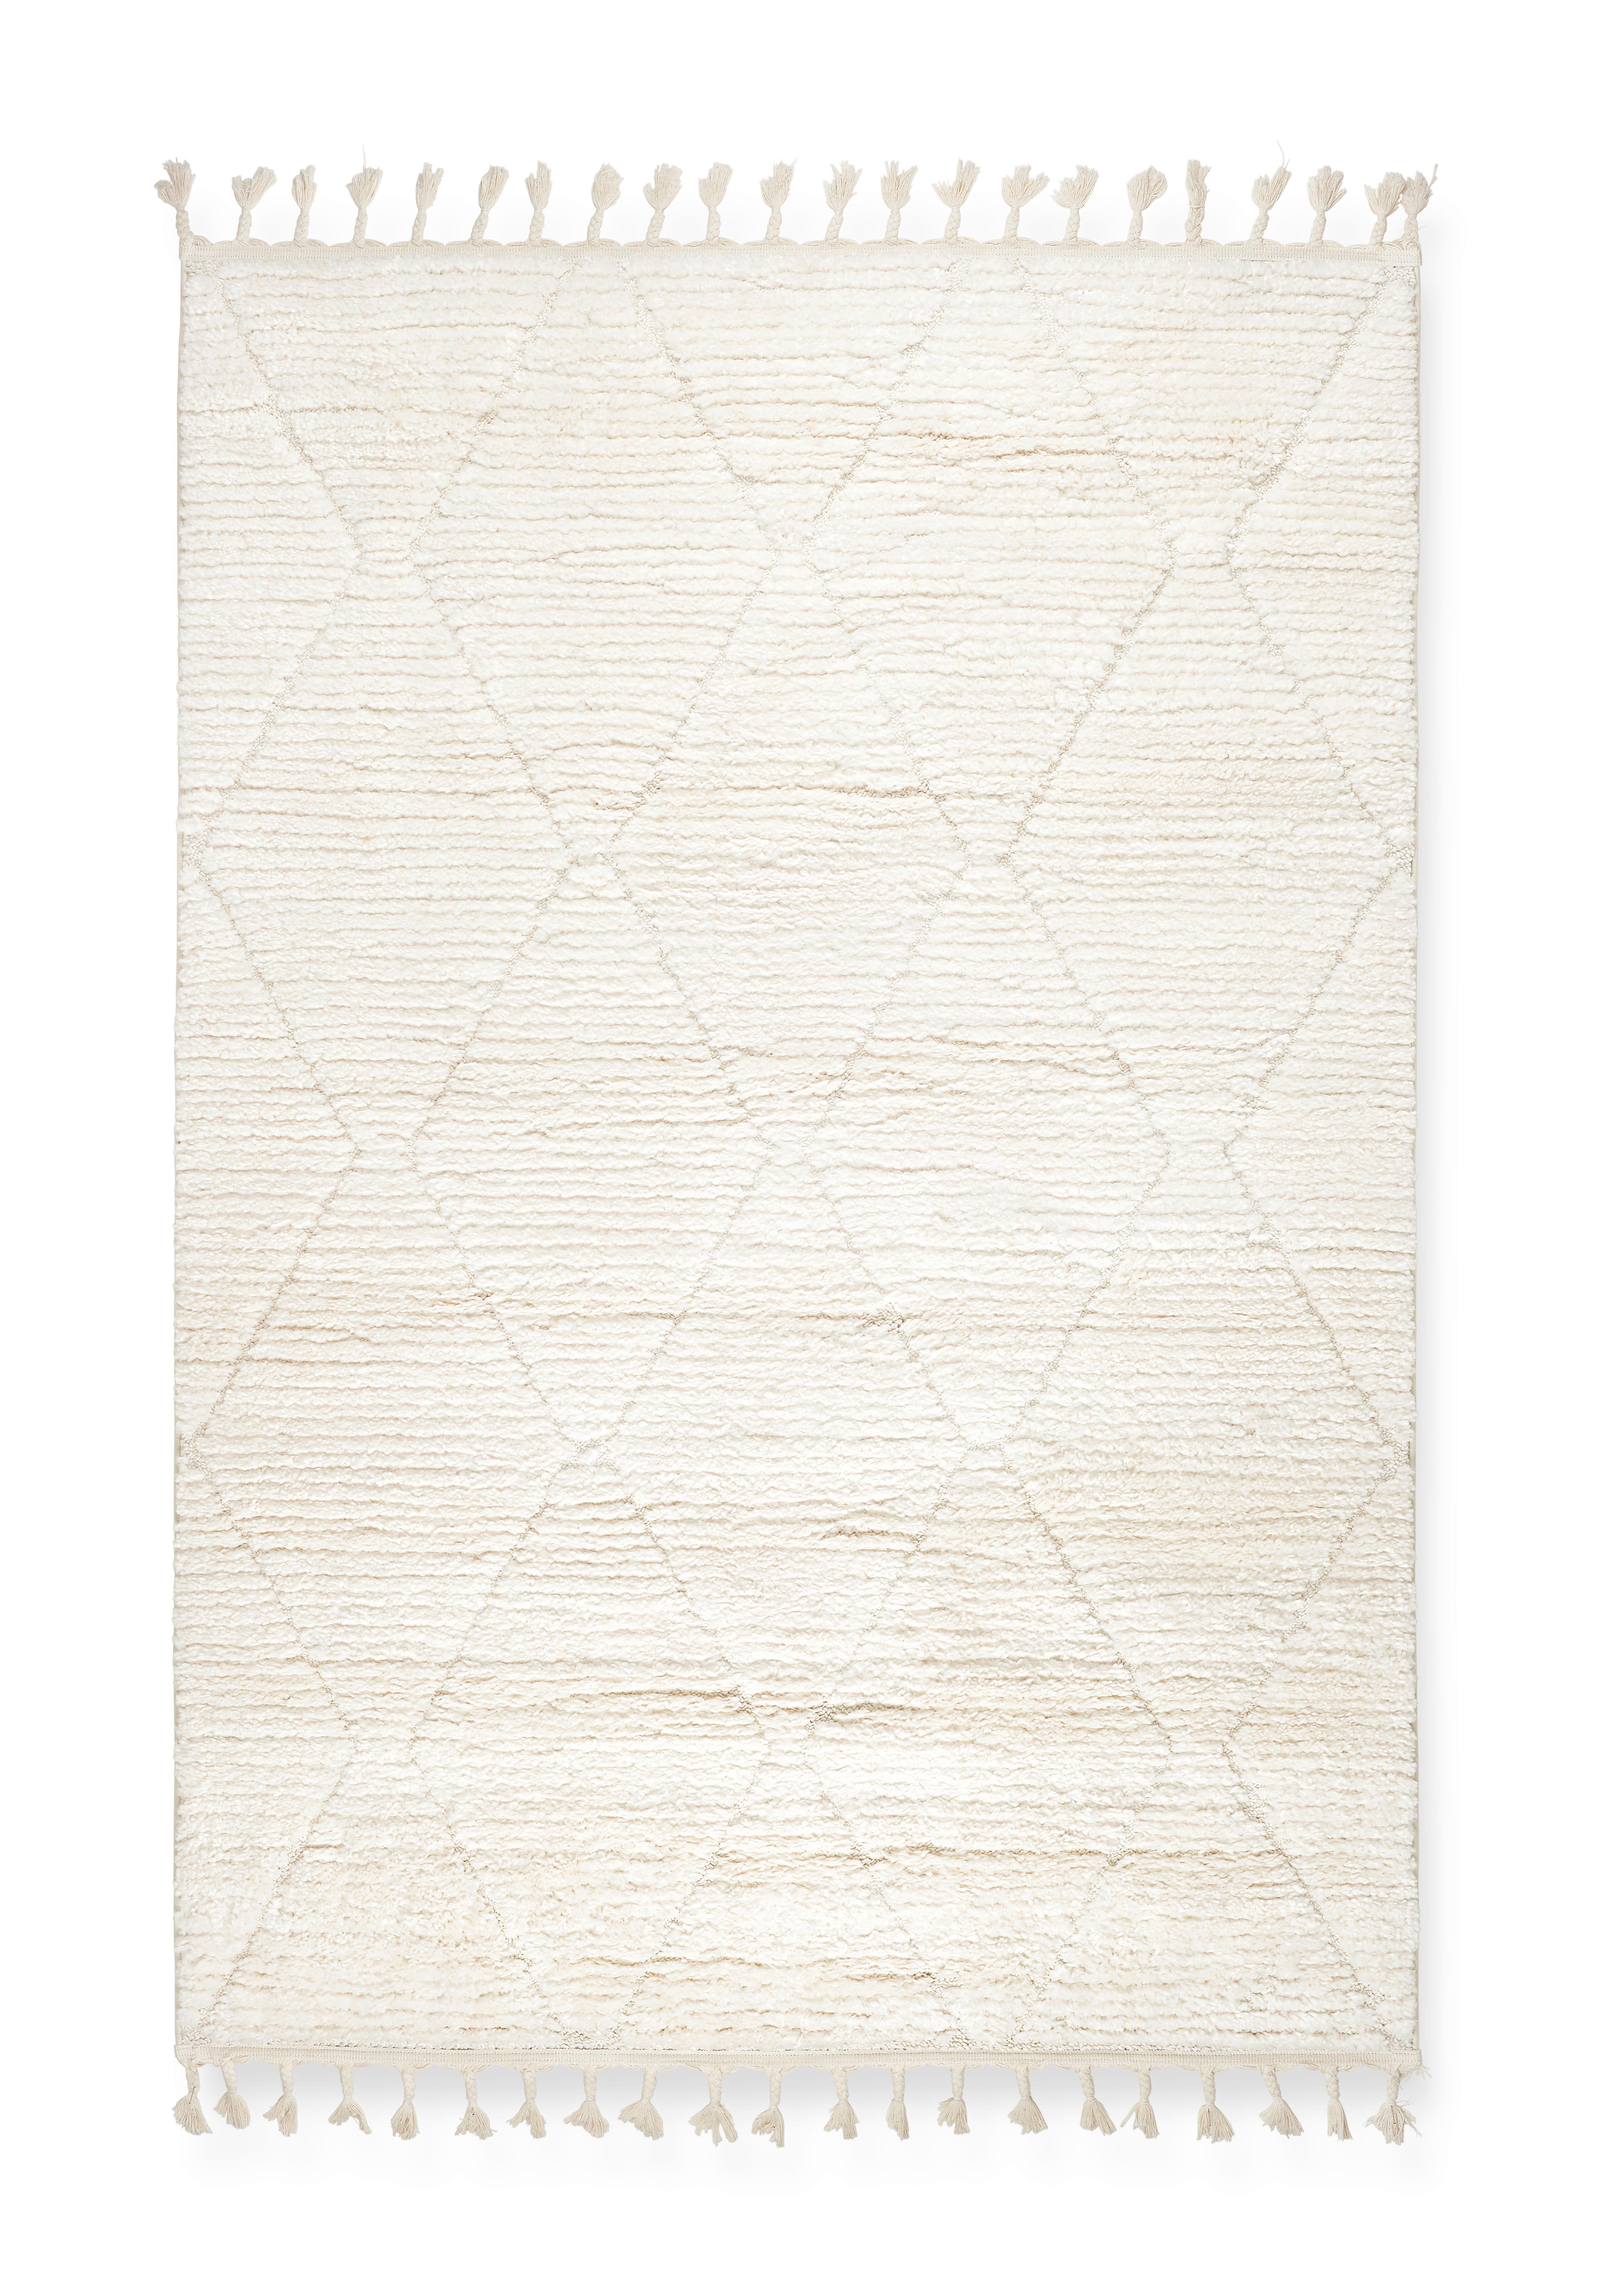 Tkaný Koberec Selma 3, 160/230cm - bílá, Basics, textil (160/230cm) - Modern Living